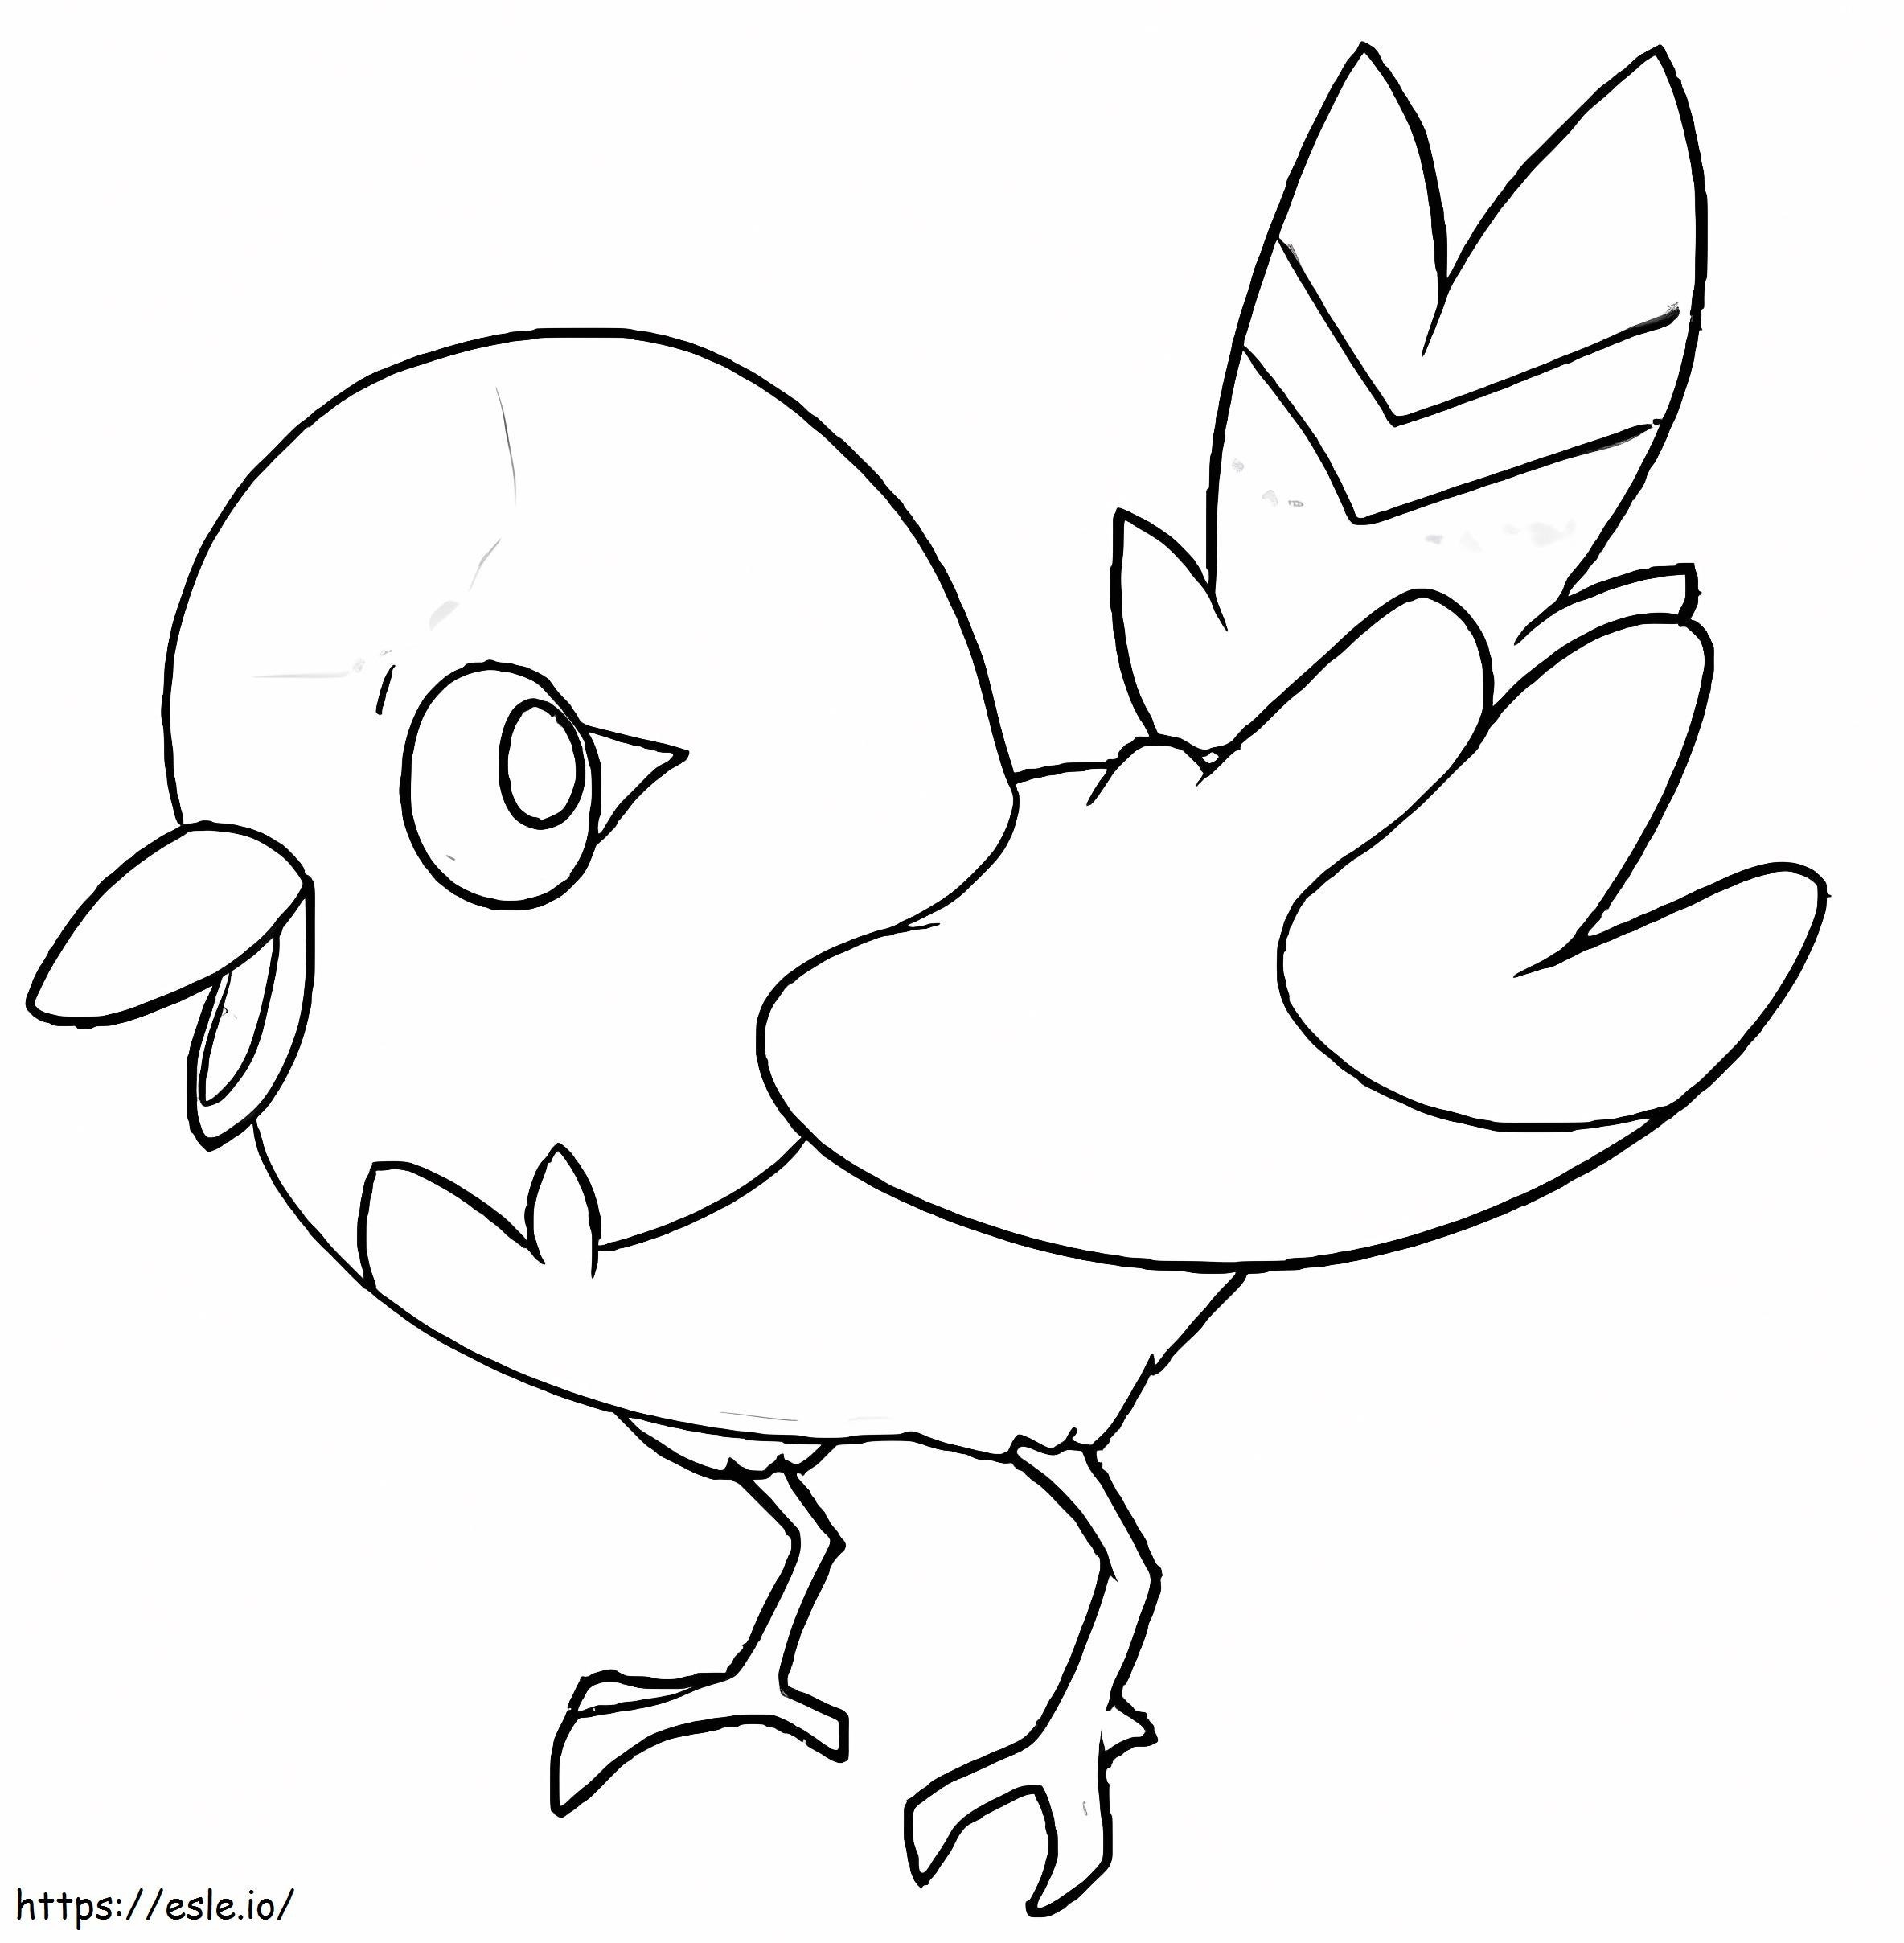 Coloriage Adorable Pokémon Fletchling à imprimer dessin